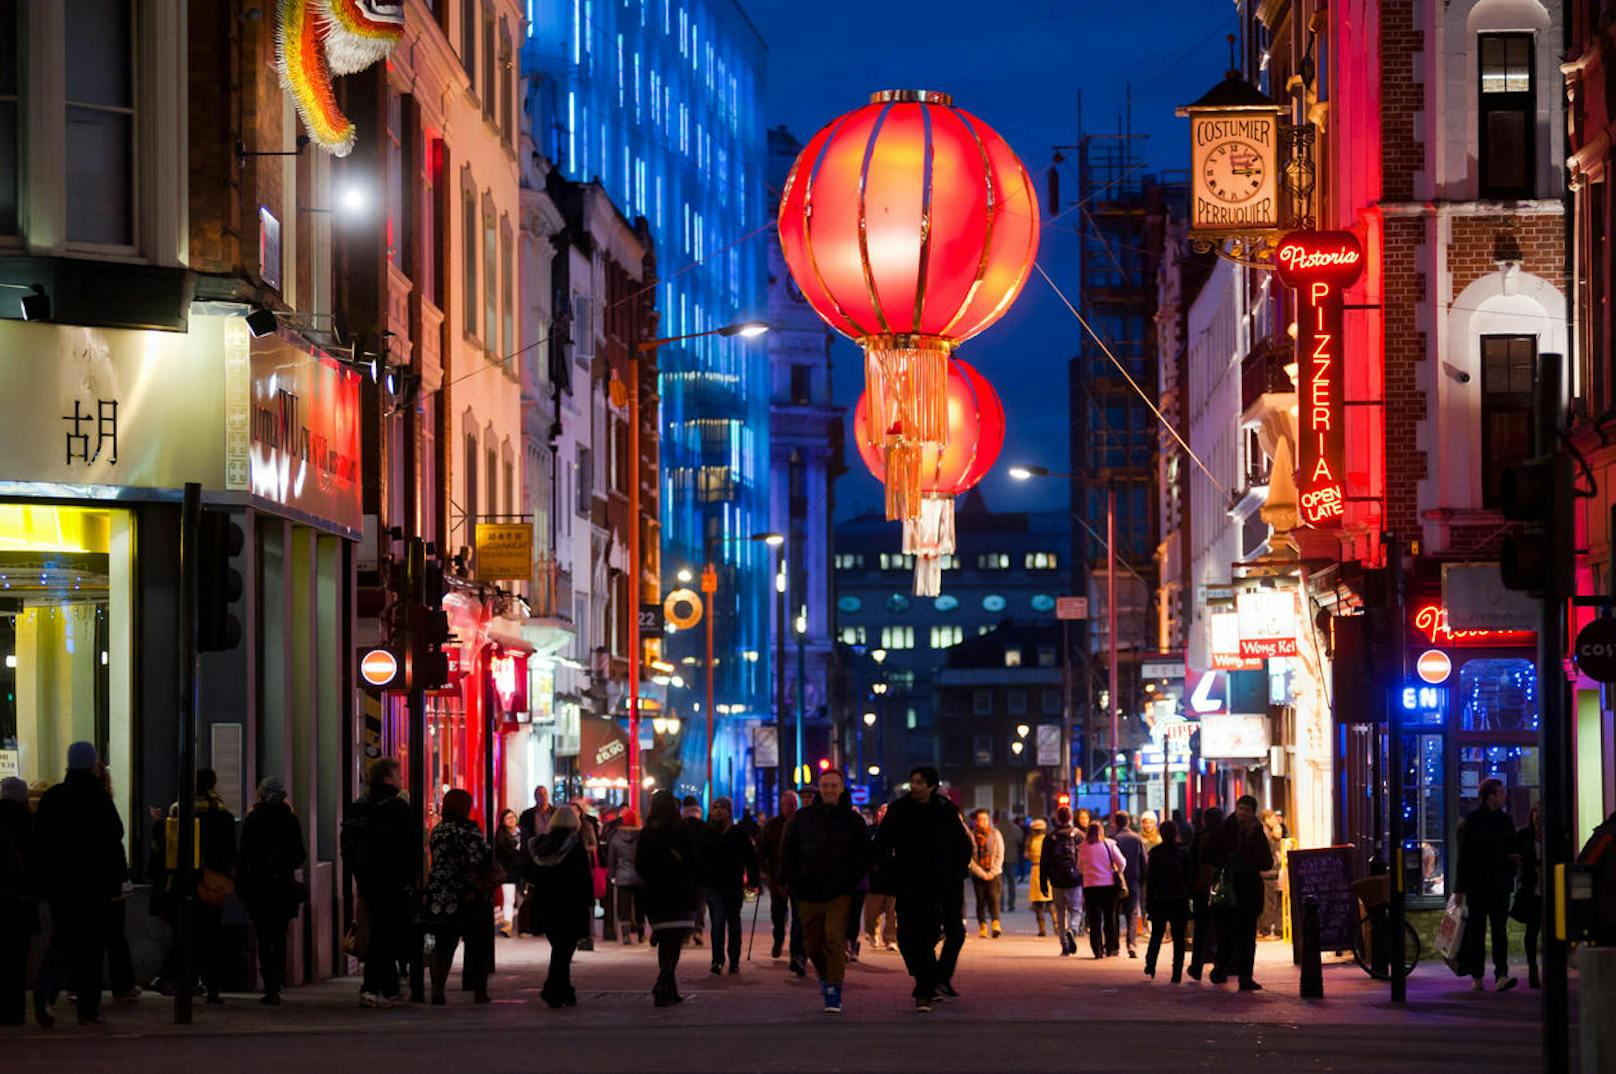 London Chinatown - eines der hippsten Viertel der Stadt ist Chinatown, das an der Gerrard Street und Liste Street liegt. Hier kann man viele verschiedene asiatische Küchen ausprobieren. Tipp: Besuchen Sie Chinatown am Abend, da kommt die Beleuchtung des Viertels besonders zur Geltung!